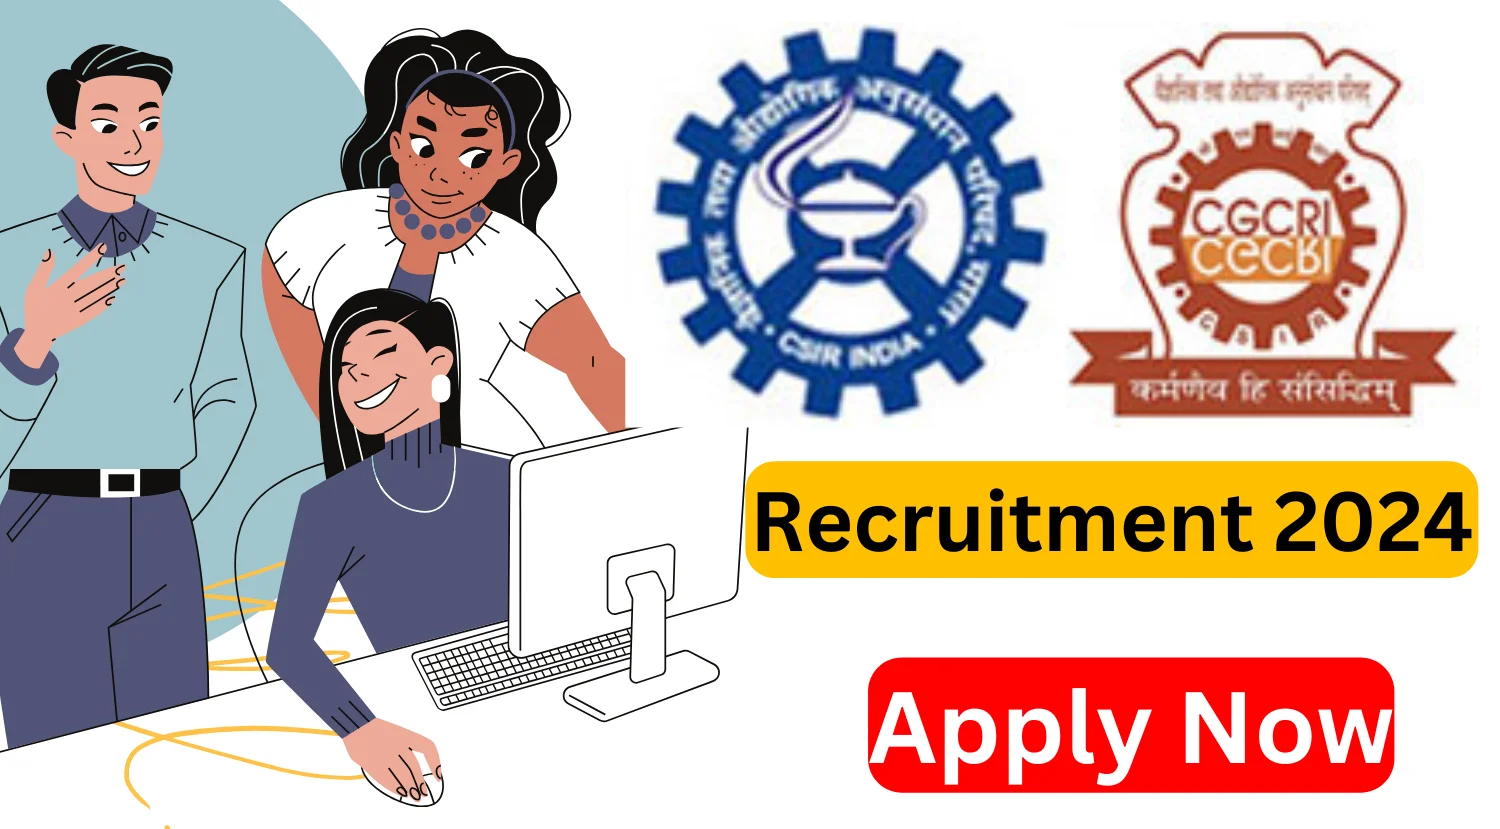 CSIR-CGCRI Recruitment 2024